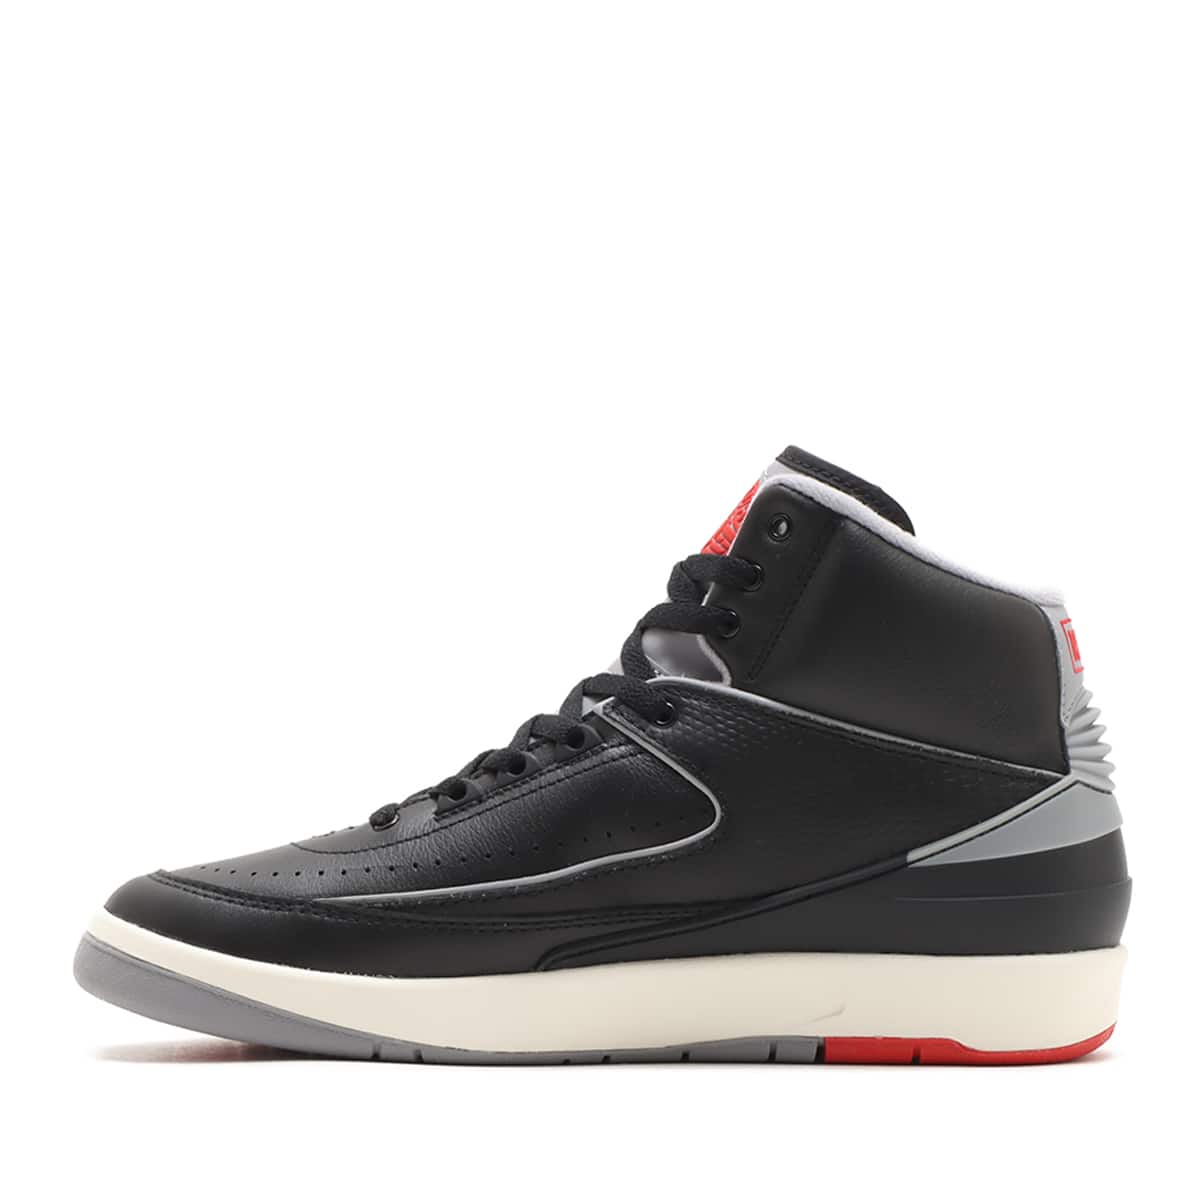 Nike Air Jordan 2 Retro Black Cementエアジョーダン2レトロ